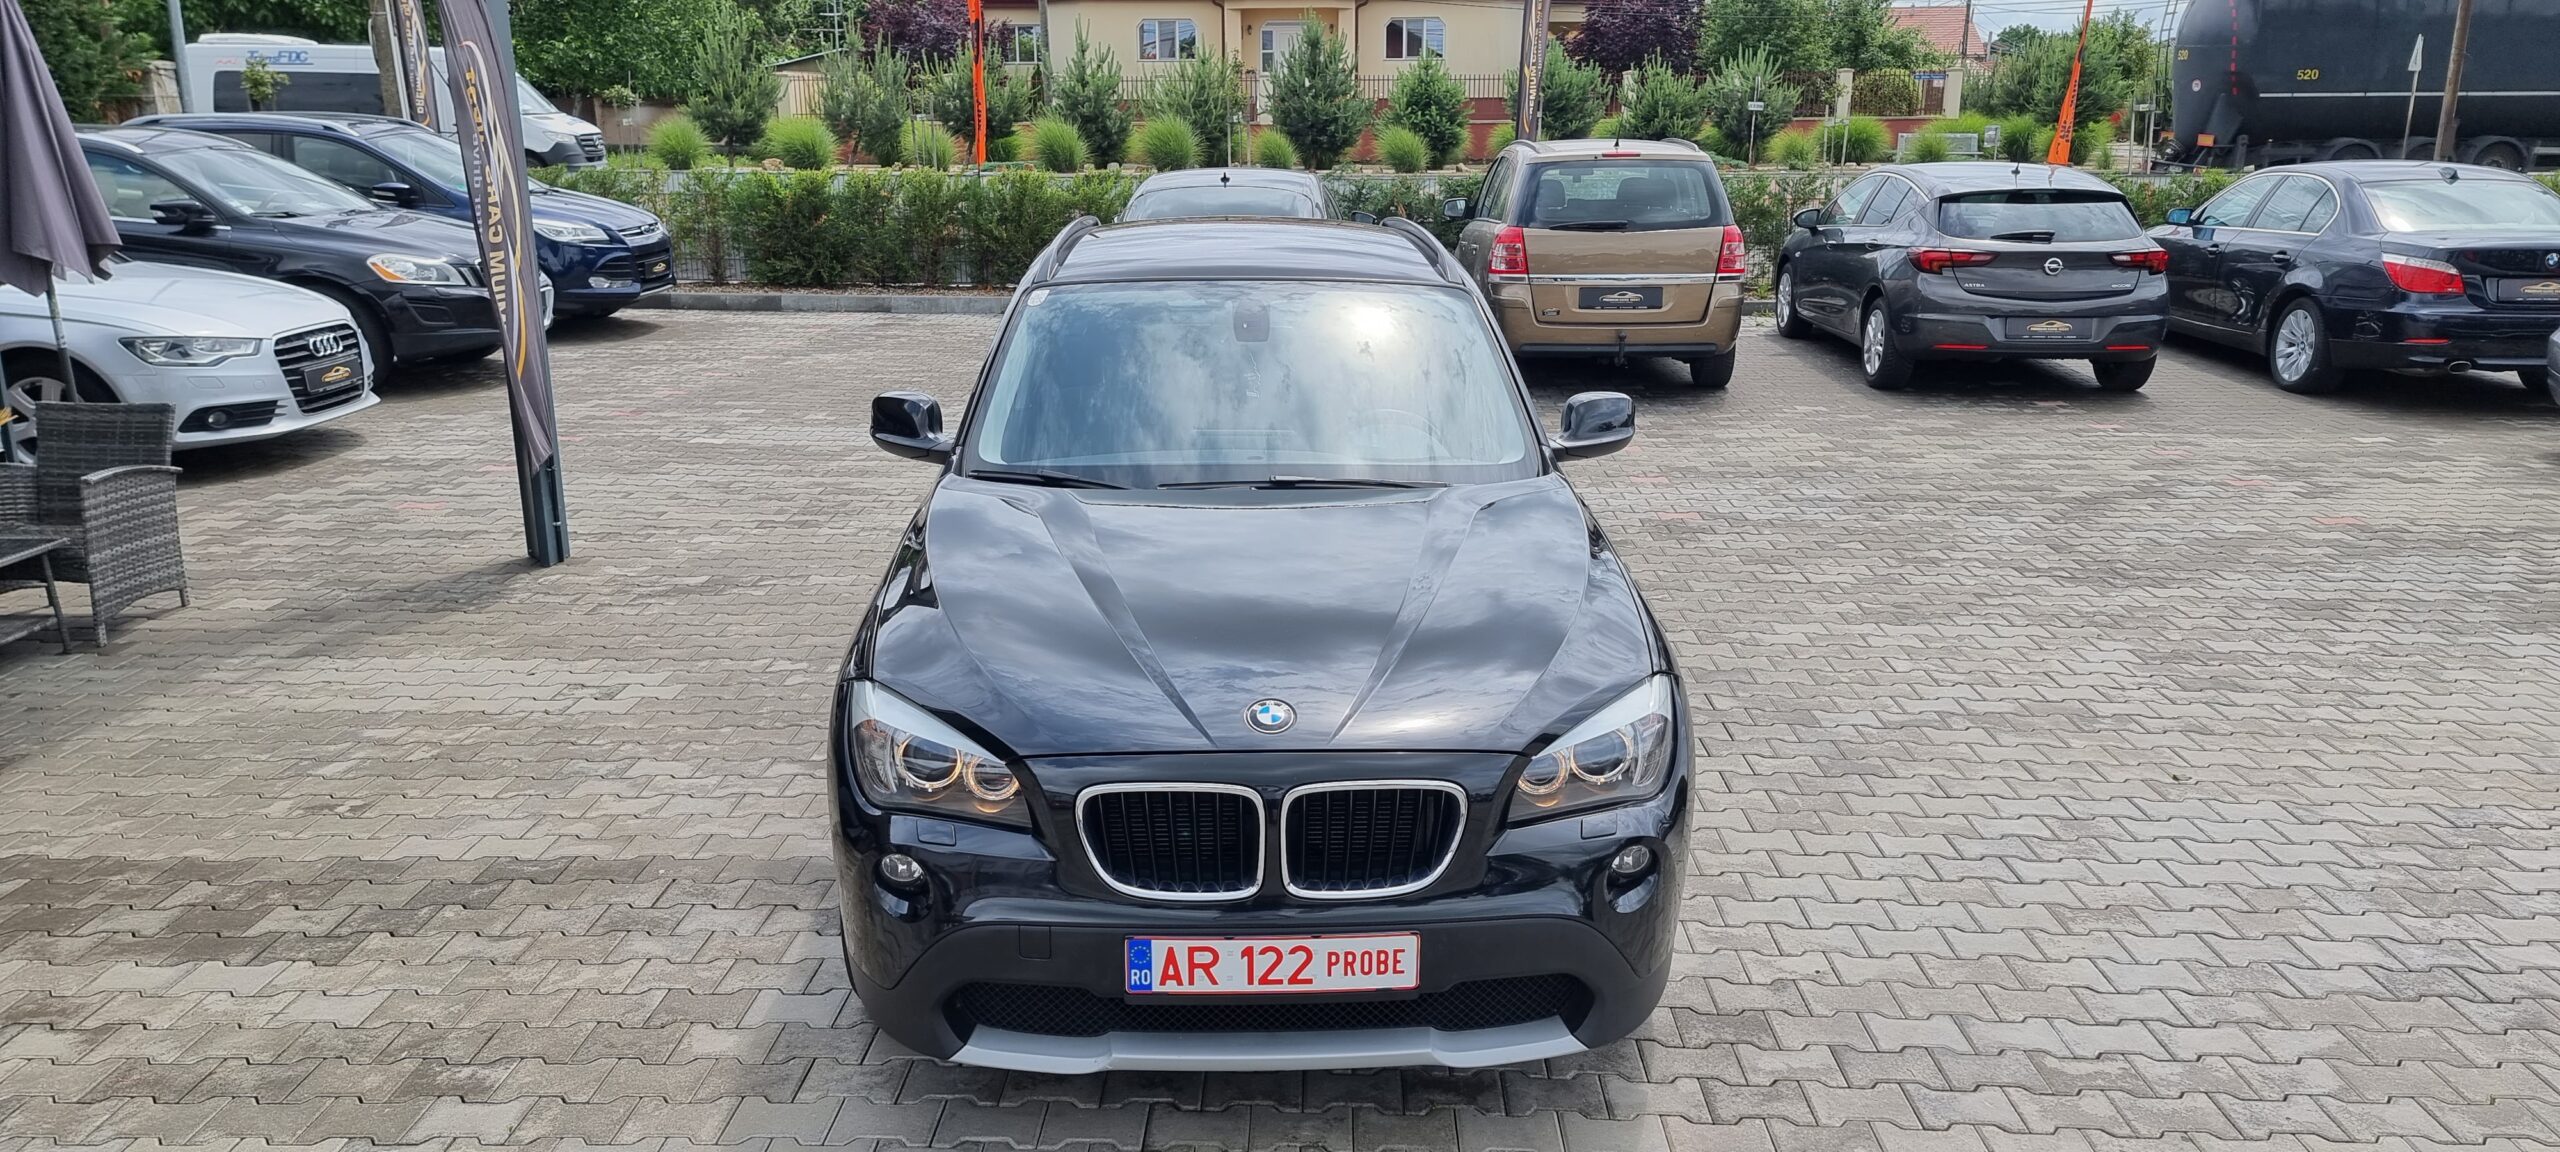 BMW X1 , 2.0 DIESEL, 143 CP, EURO 5, AN 2010